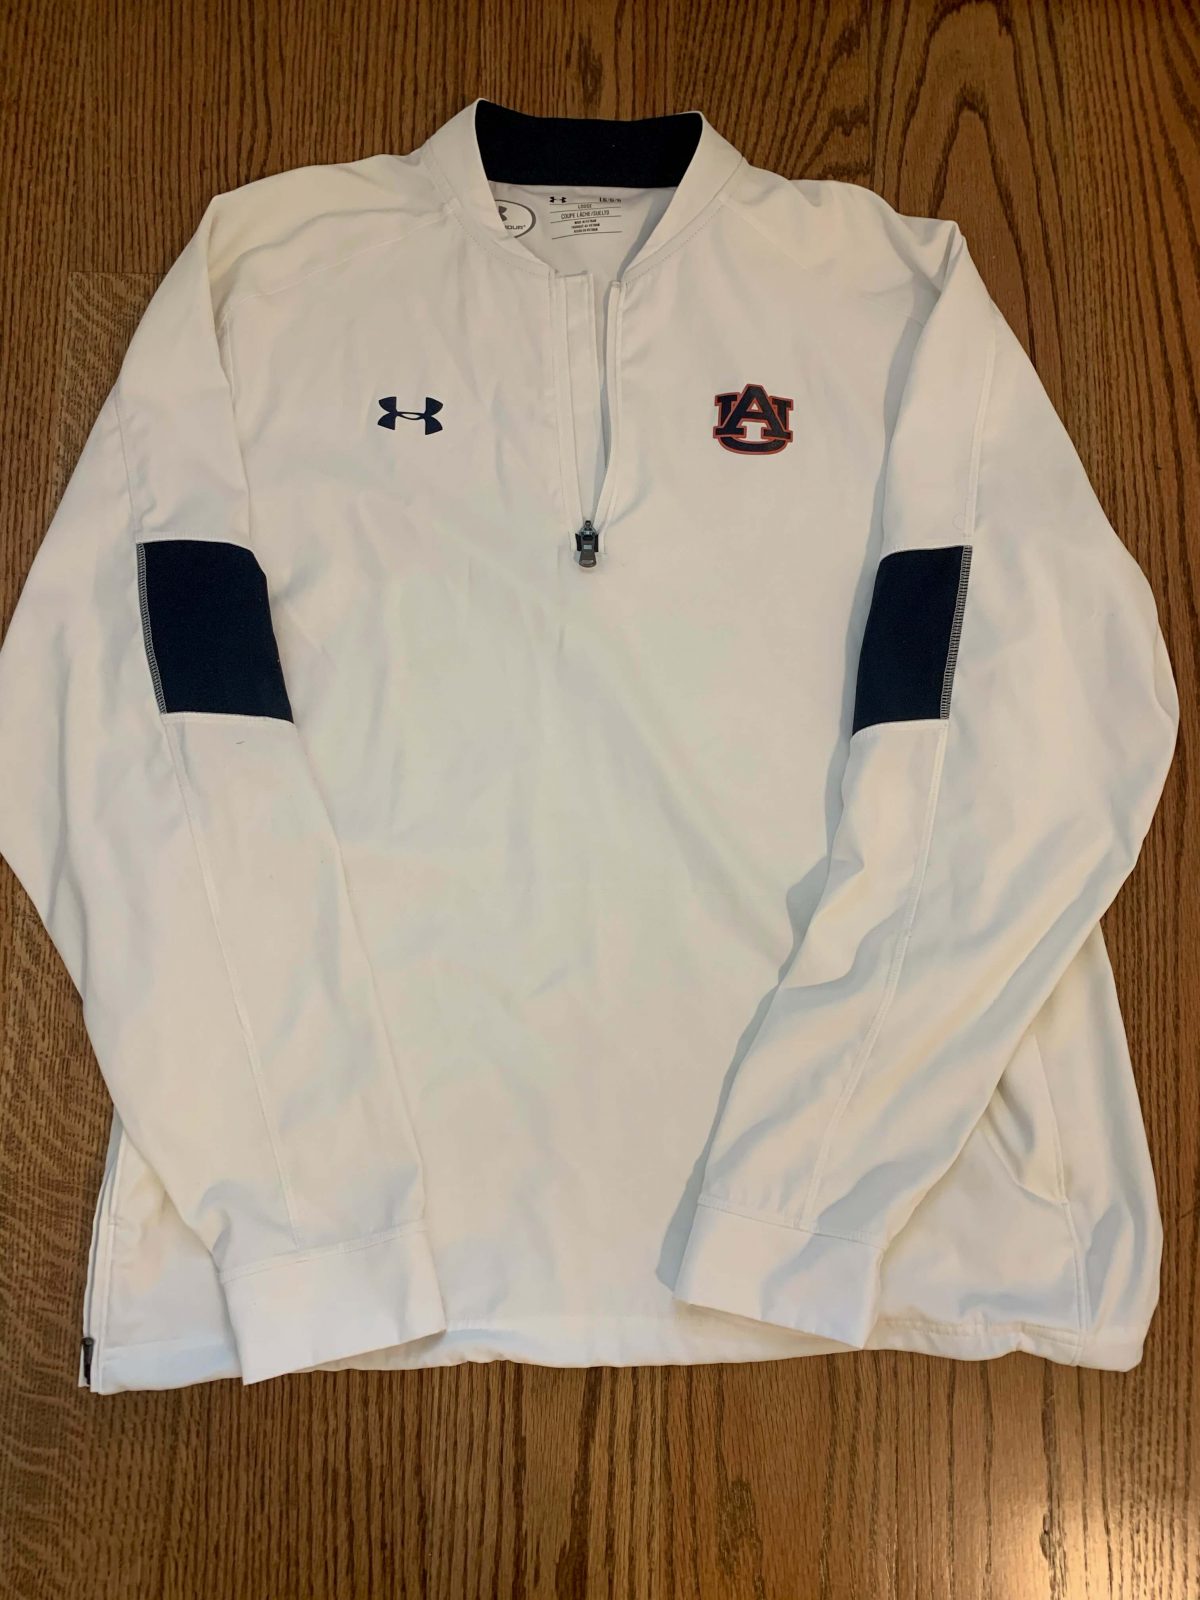 Auburn Under Armour Jacket : NARP Clothing